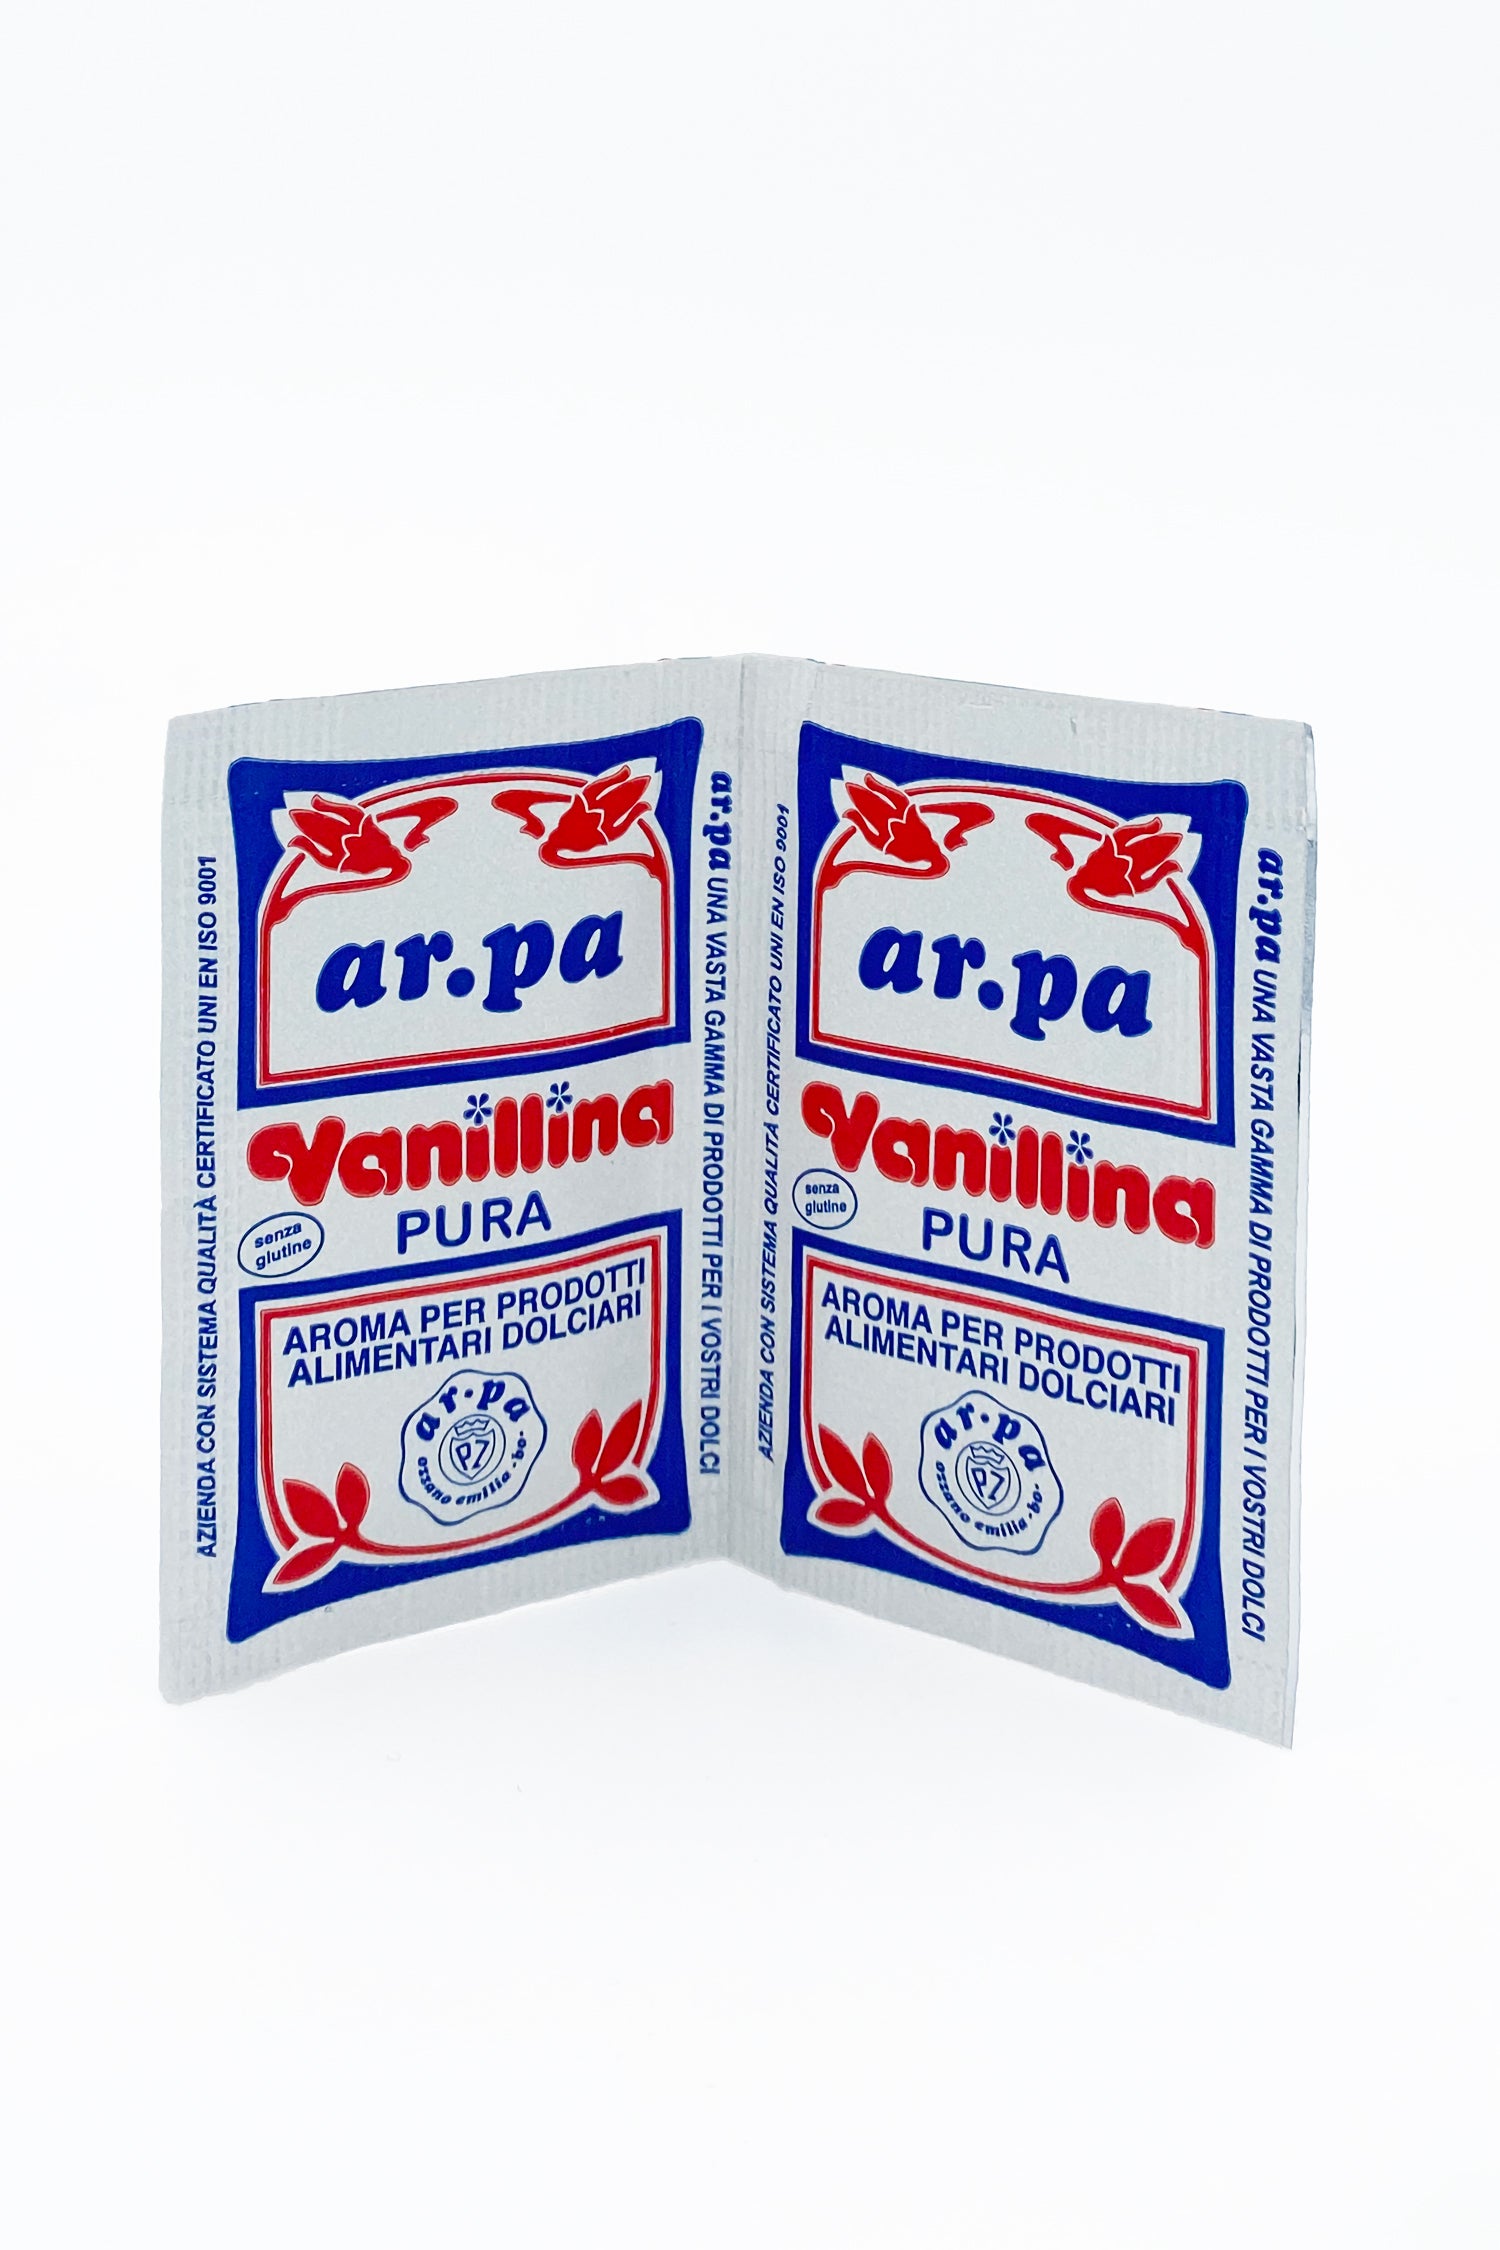 Vanillina Pura 0,5 g (Busta Doppia) - Ar.pa Lieviti